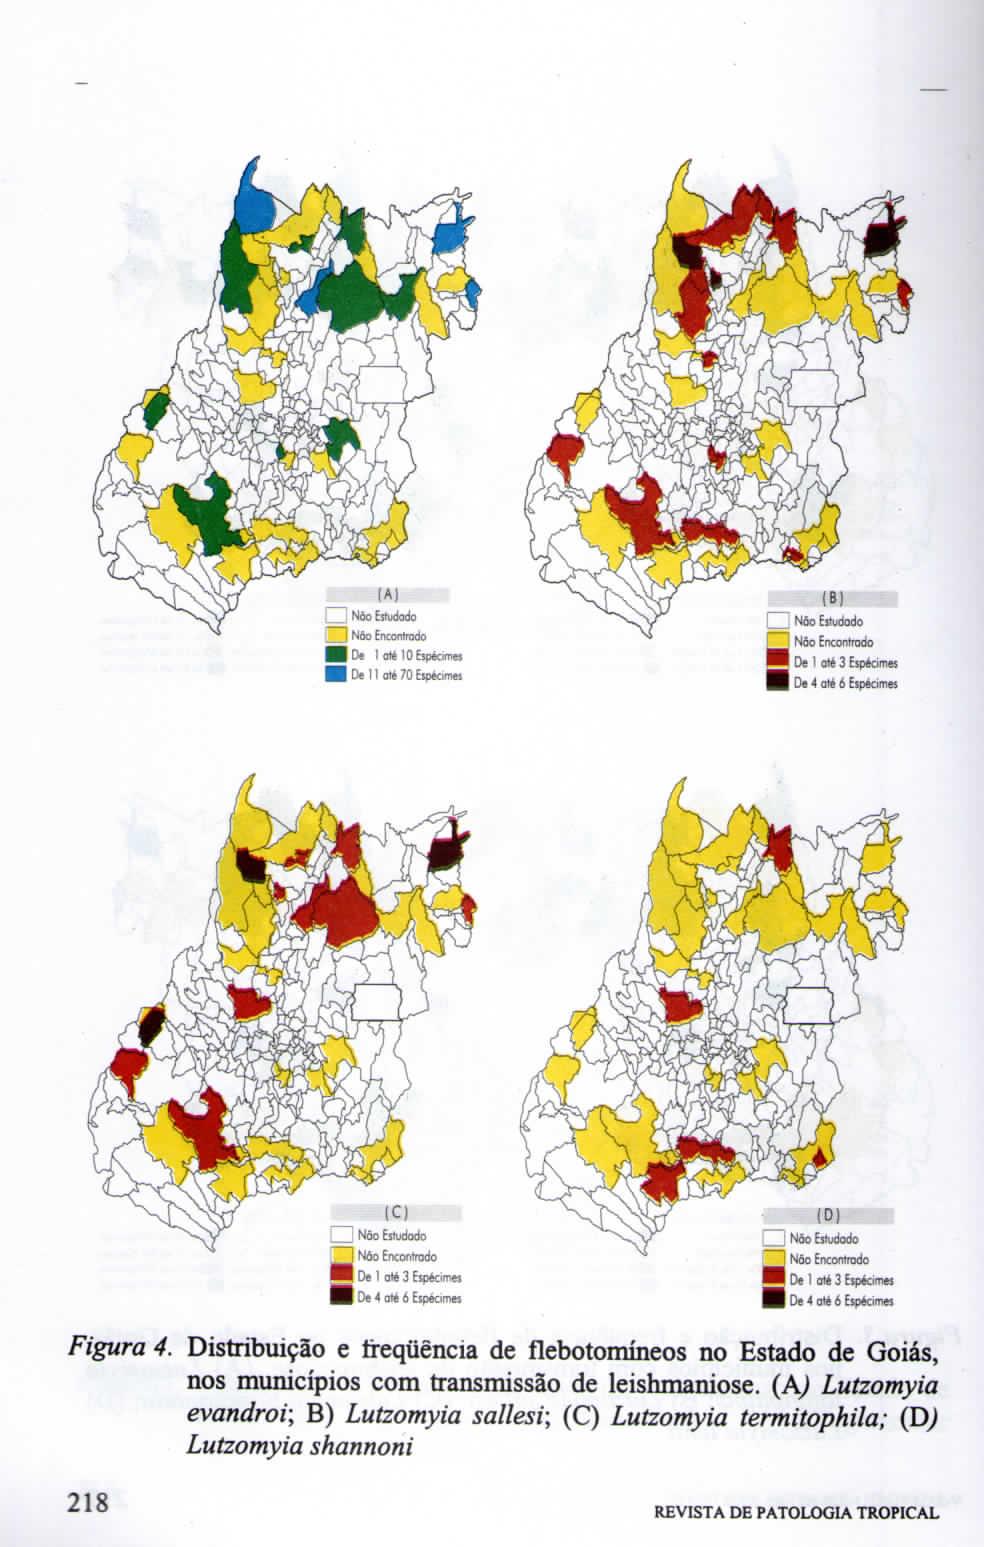 Figura 4 Distribuição e frequência de flebotomíneos no Estado de Goiás, nos municípios com transmissão de leishmaniose (AJ